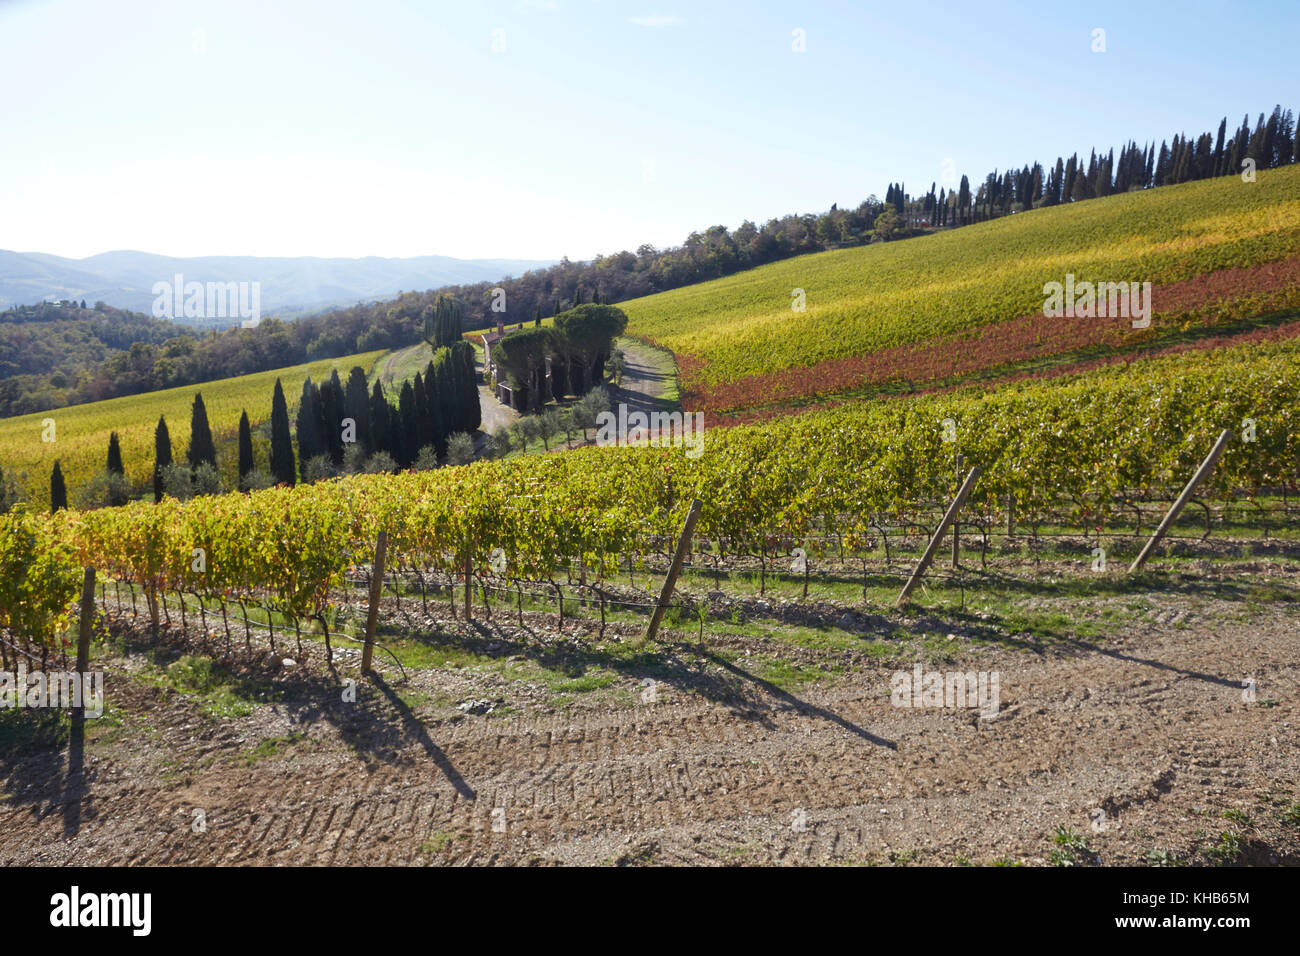 Vineyards of the Castello di Albola estate in the Chianti region, Tuscany, Italy. Stock Photo